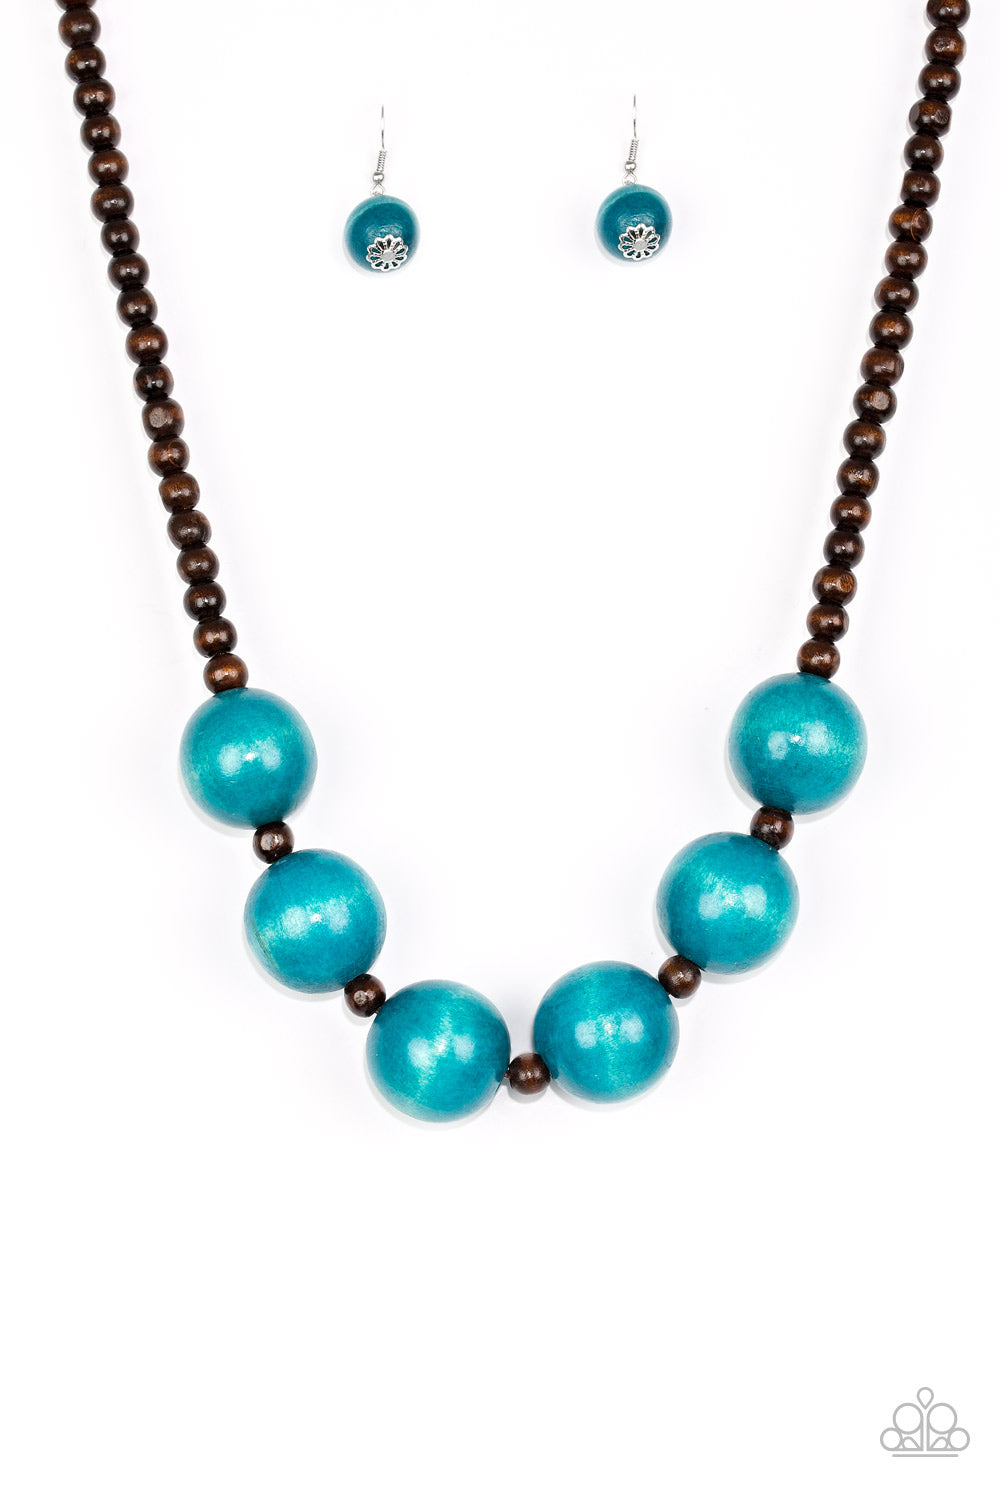 Oh My Miami - Blue Necklace freeshipping - JewLz4u Gemstone Gallery